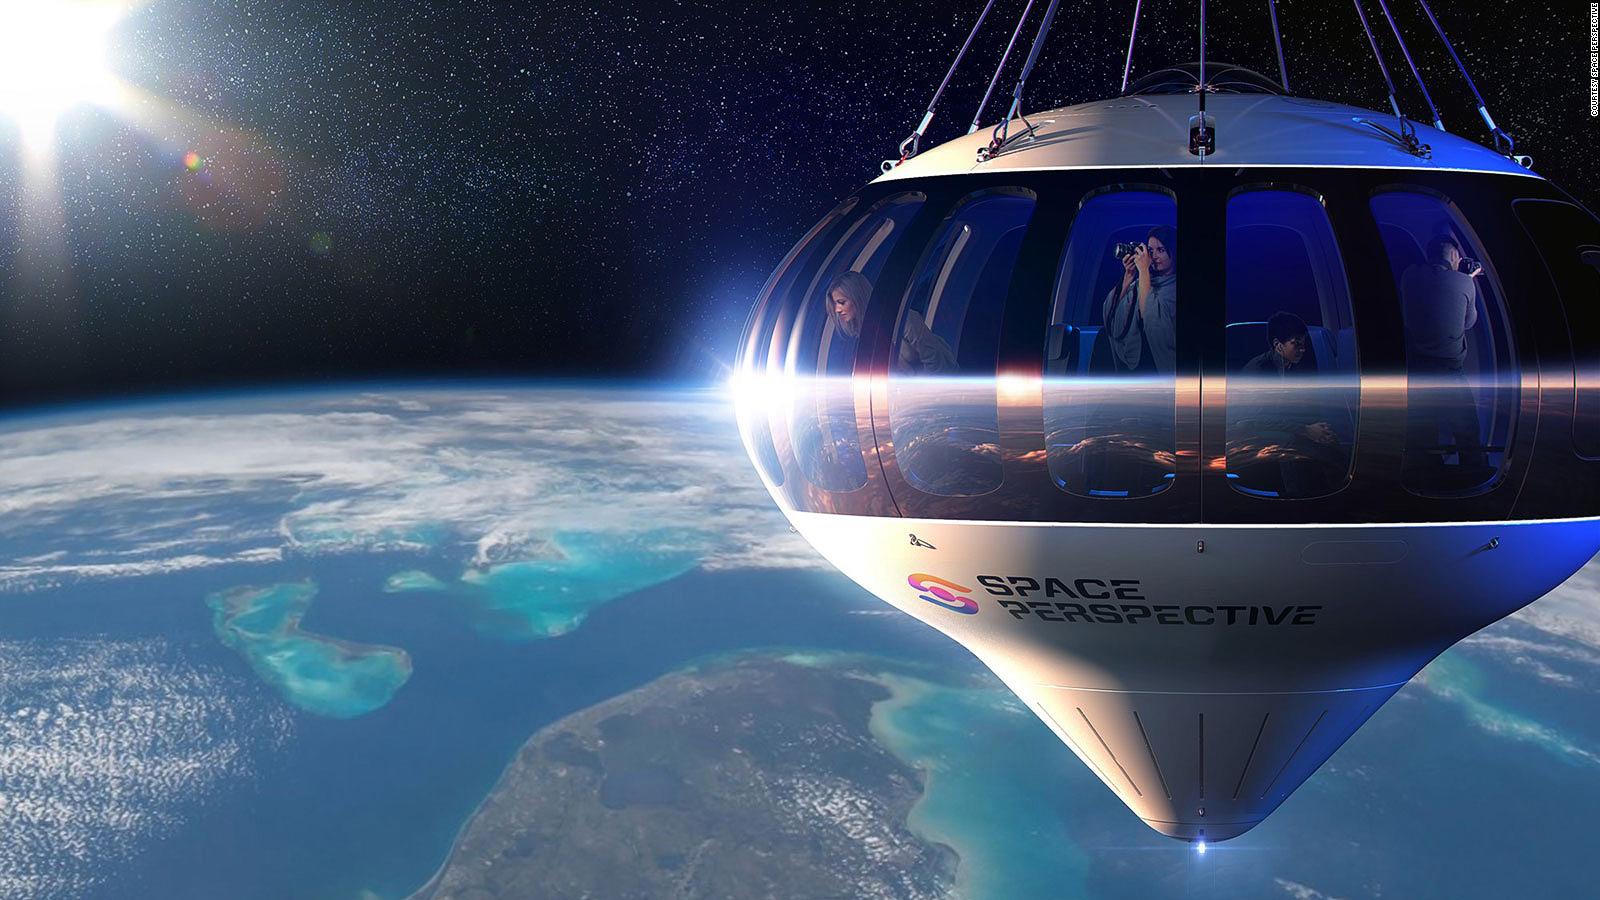 Travelling is possible. Space perspective космический туризм. Монгольфьер в стратосфере. Полет в стратосферу на воздушном шаре. Космический воздушный шар.